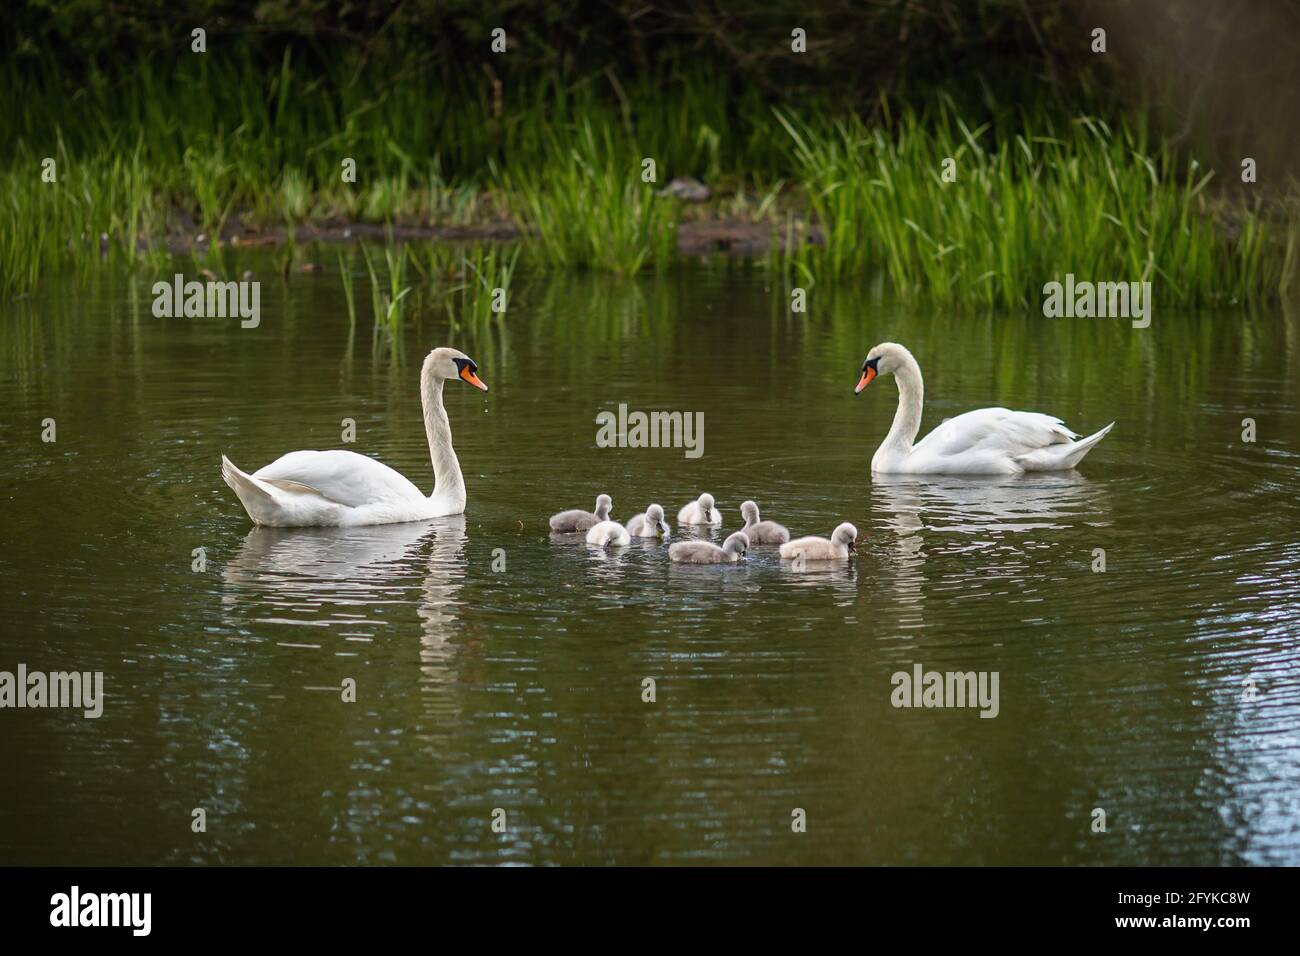 Famille de cygnes blancs sauvages muets avec sept petits émotifs nageant dans un lac vert. Banque D'Images